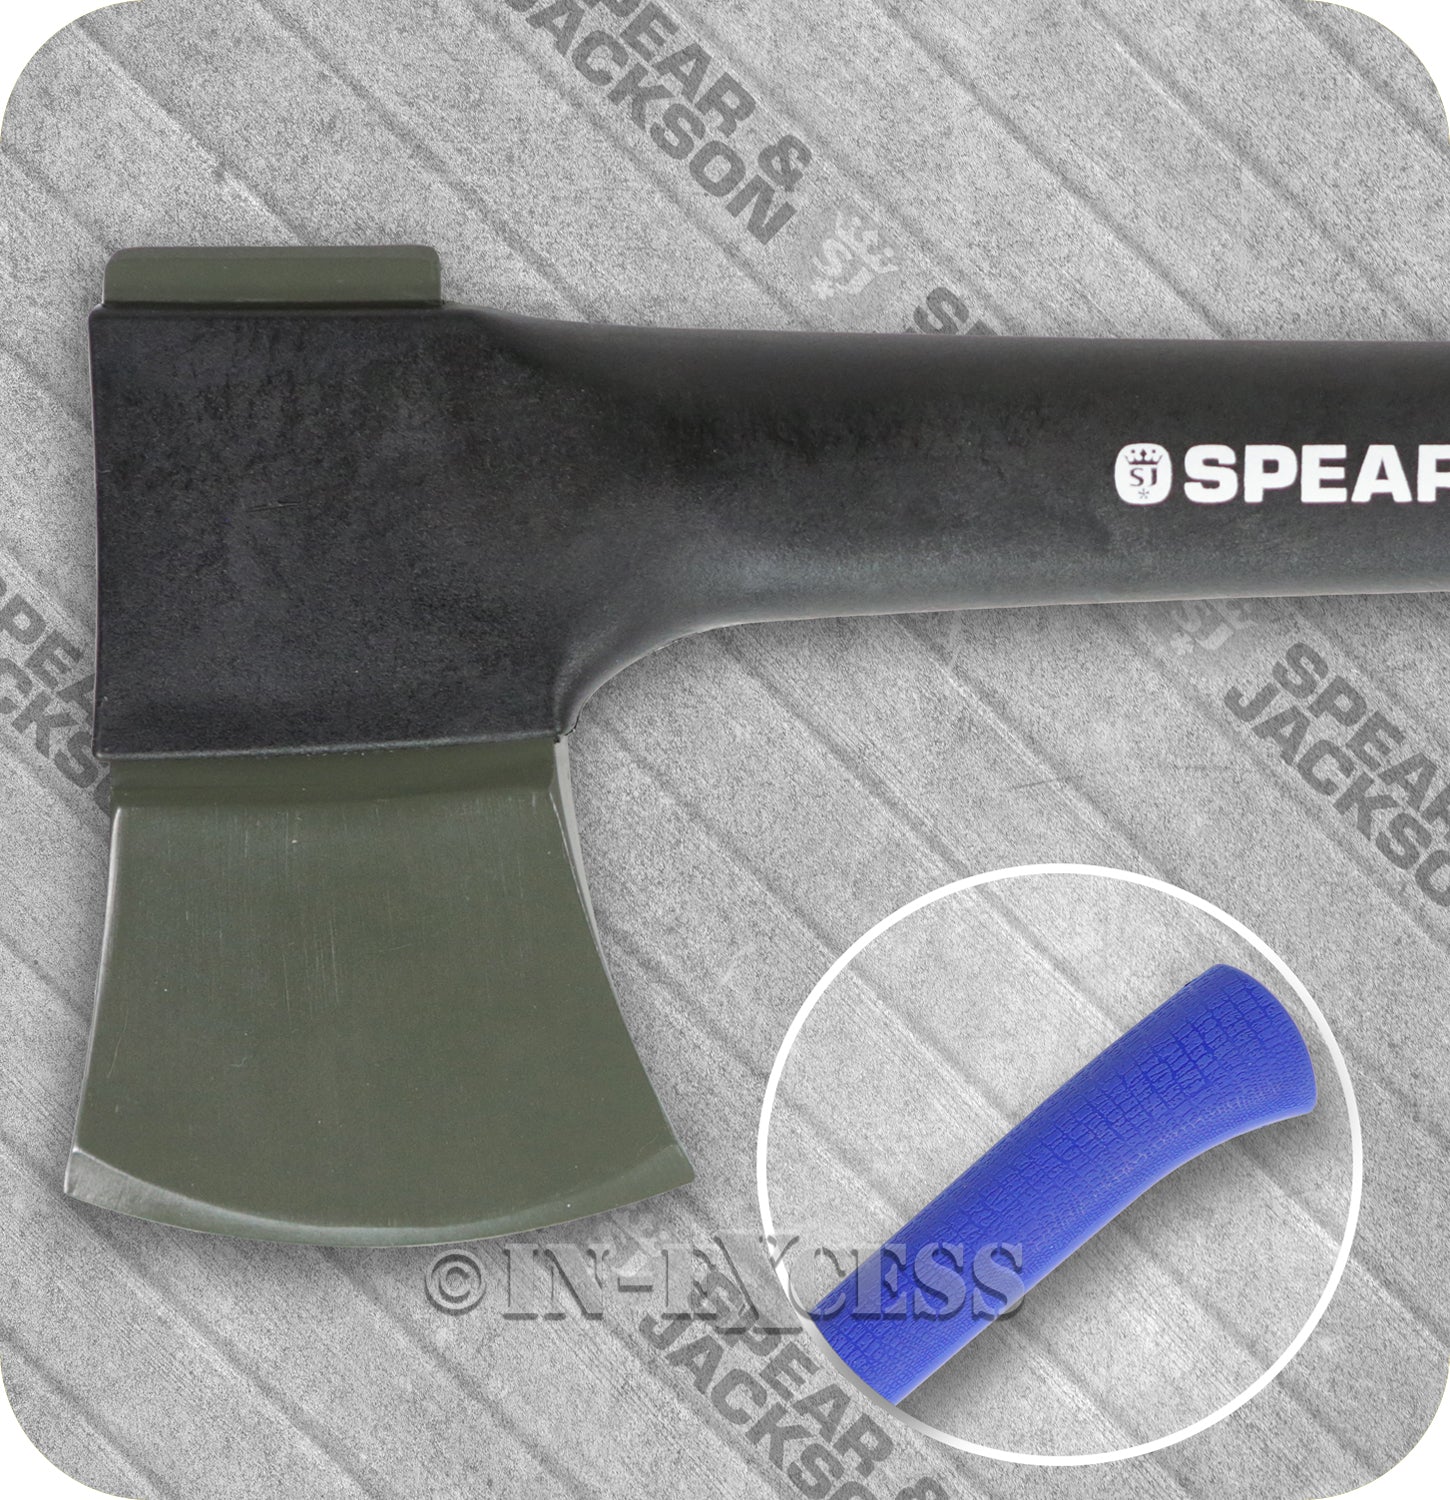 Spear & Jackson Razorsharp Professional Chopping Felling Splitting Axe - 1.8kg